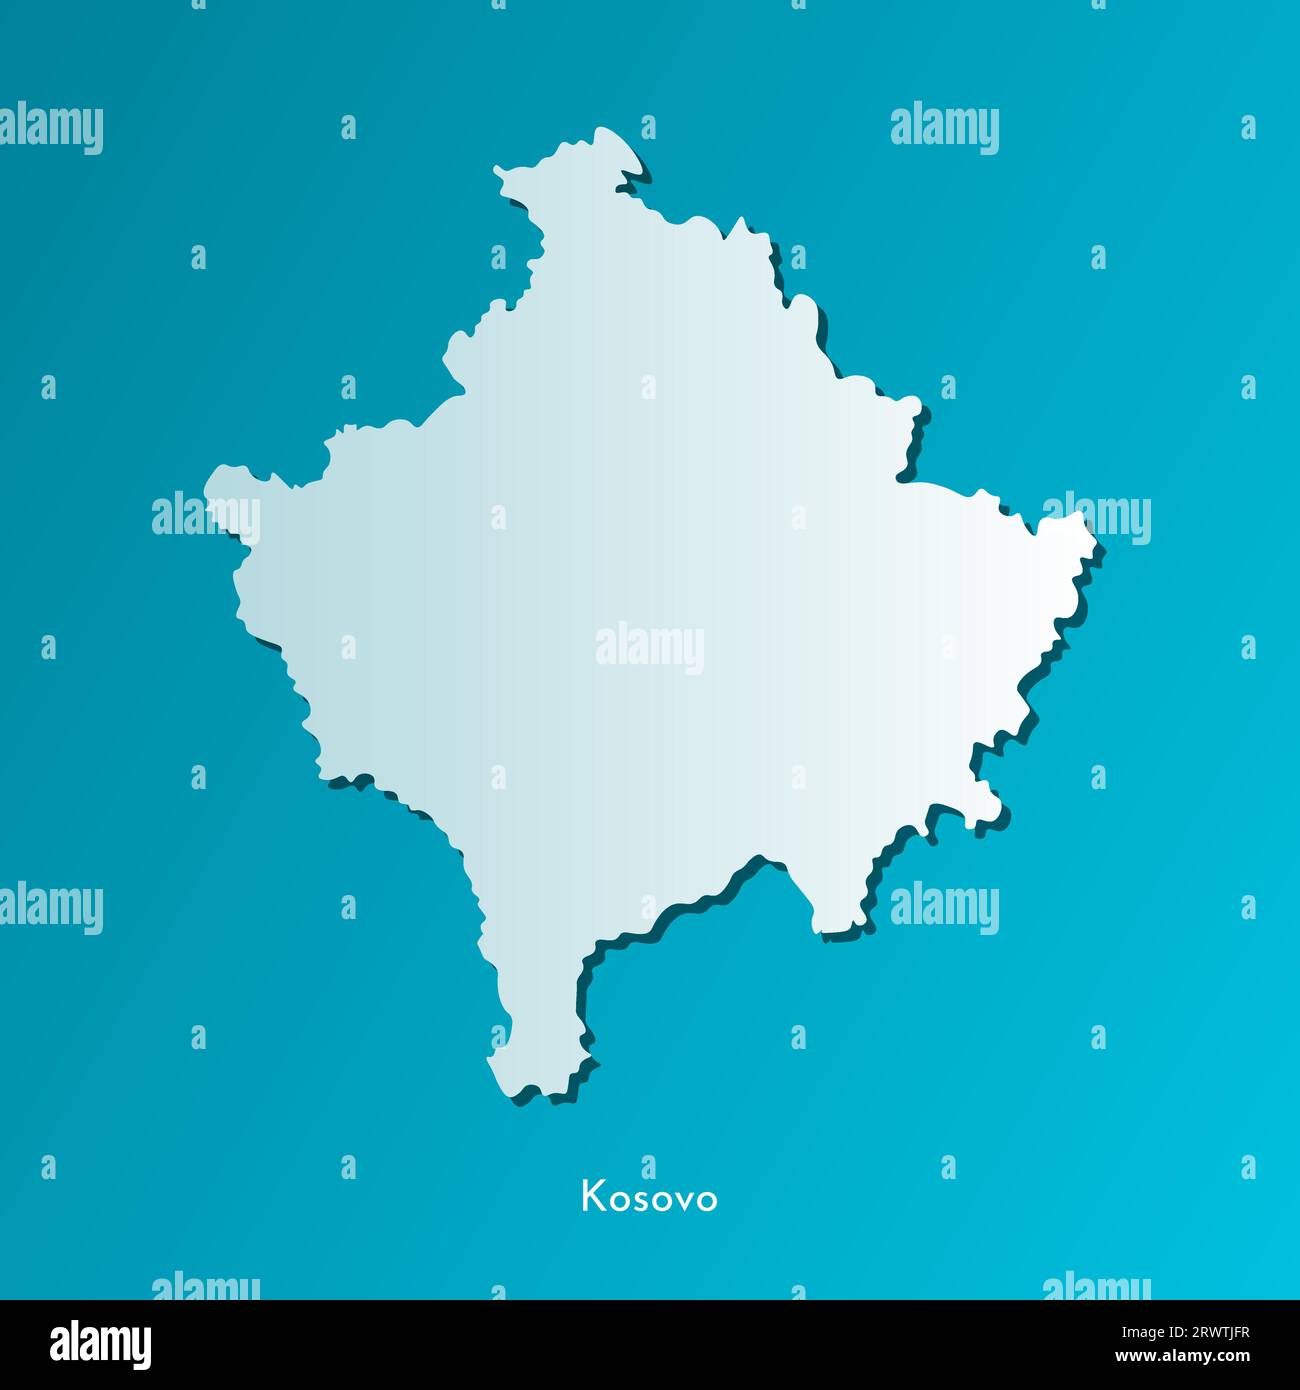 Vecteur isolé icône d'illustration simplifiée avec silhouette bleue de la carte du Kosovo. Fond bleu foncé. Illustration de Vecteur